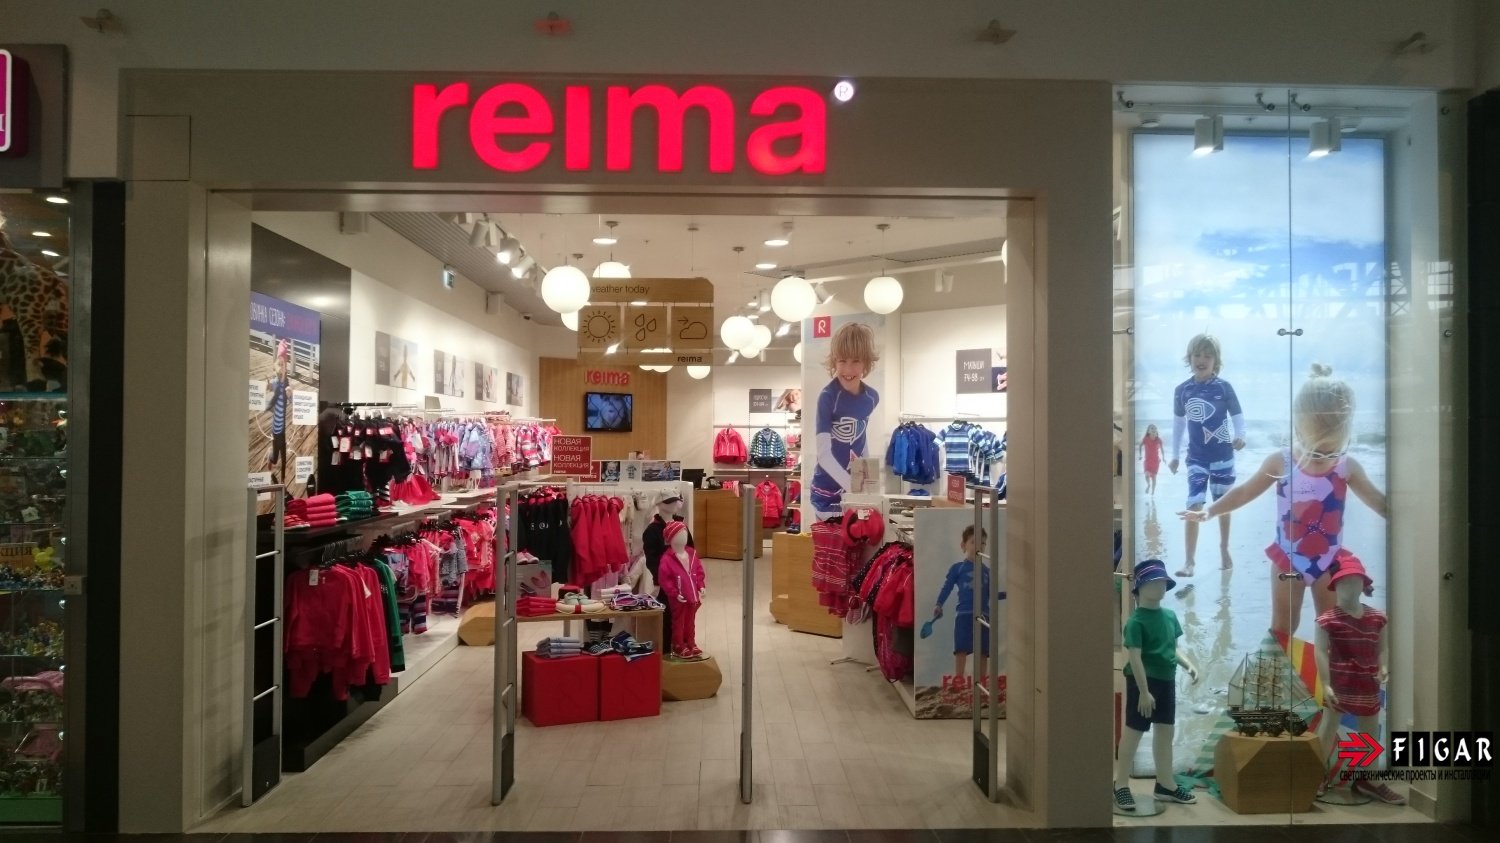 Оформление освещения в магазине детской одежды Reima